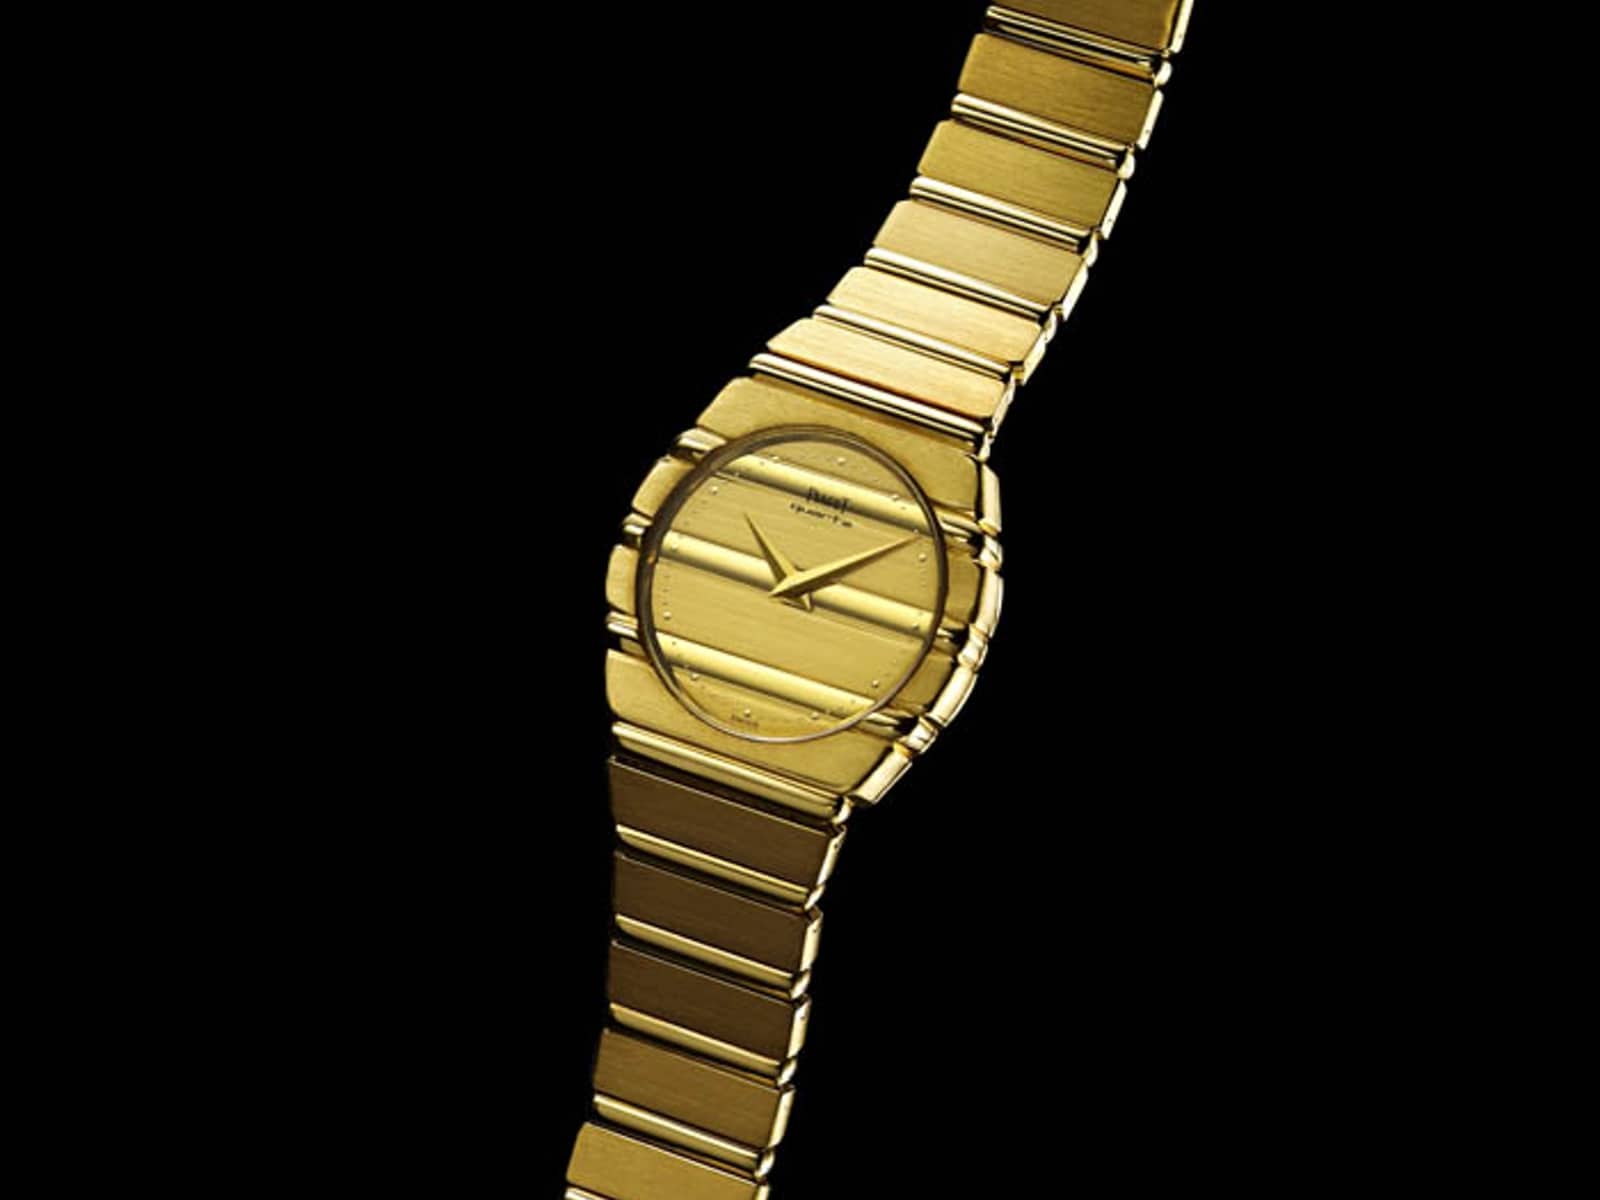 Piaget-Anzeige mit der Piaget Polo Gold Quarzkaliber von 1979